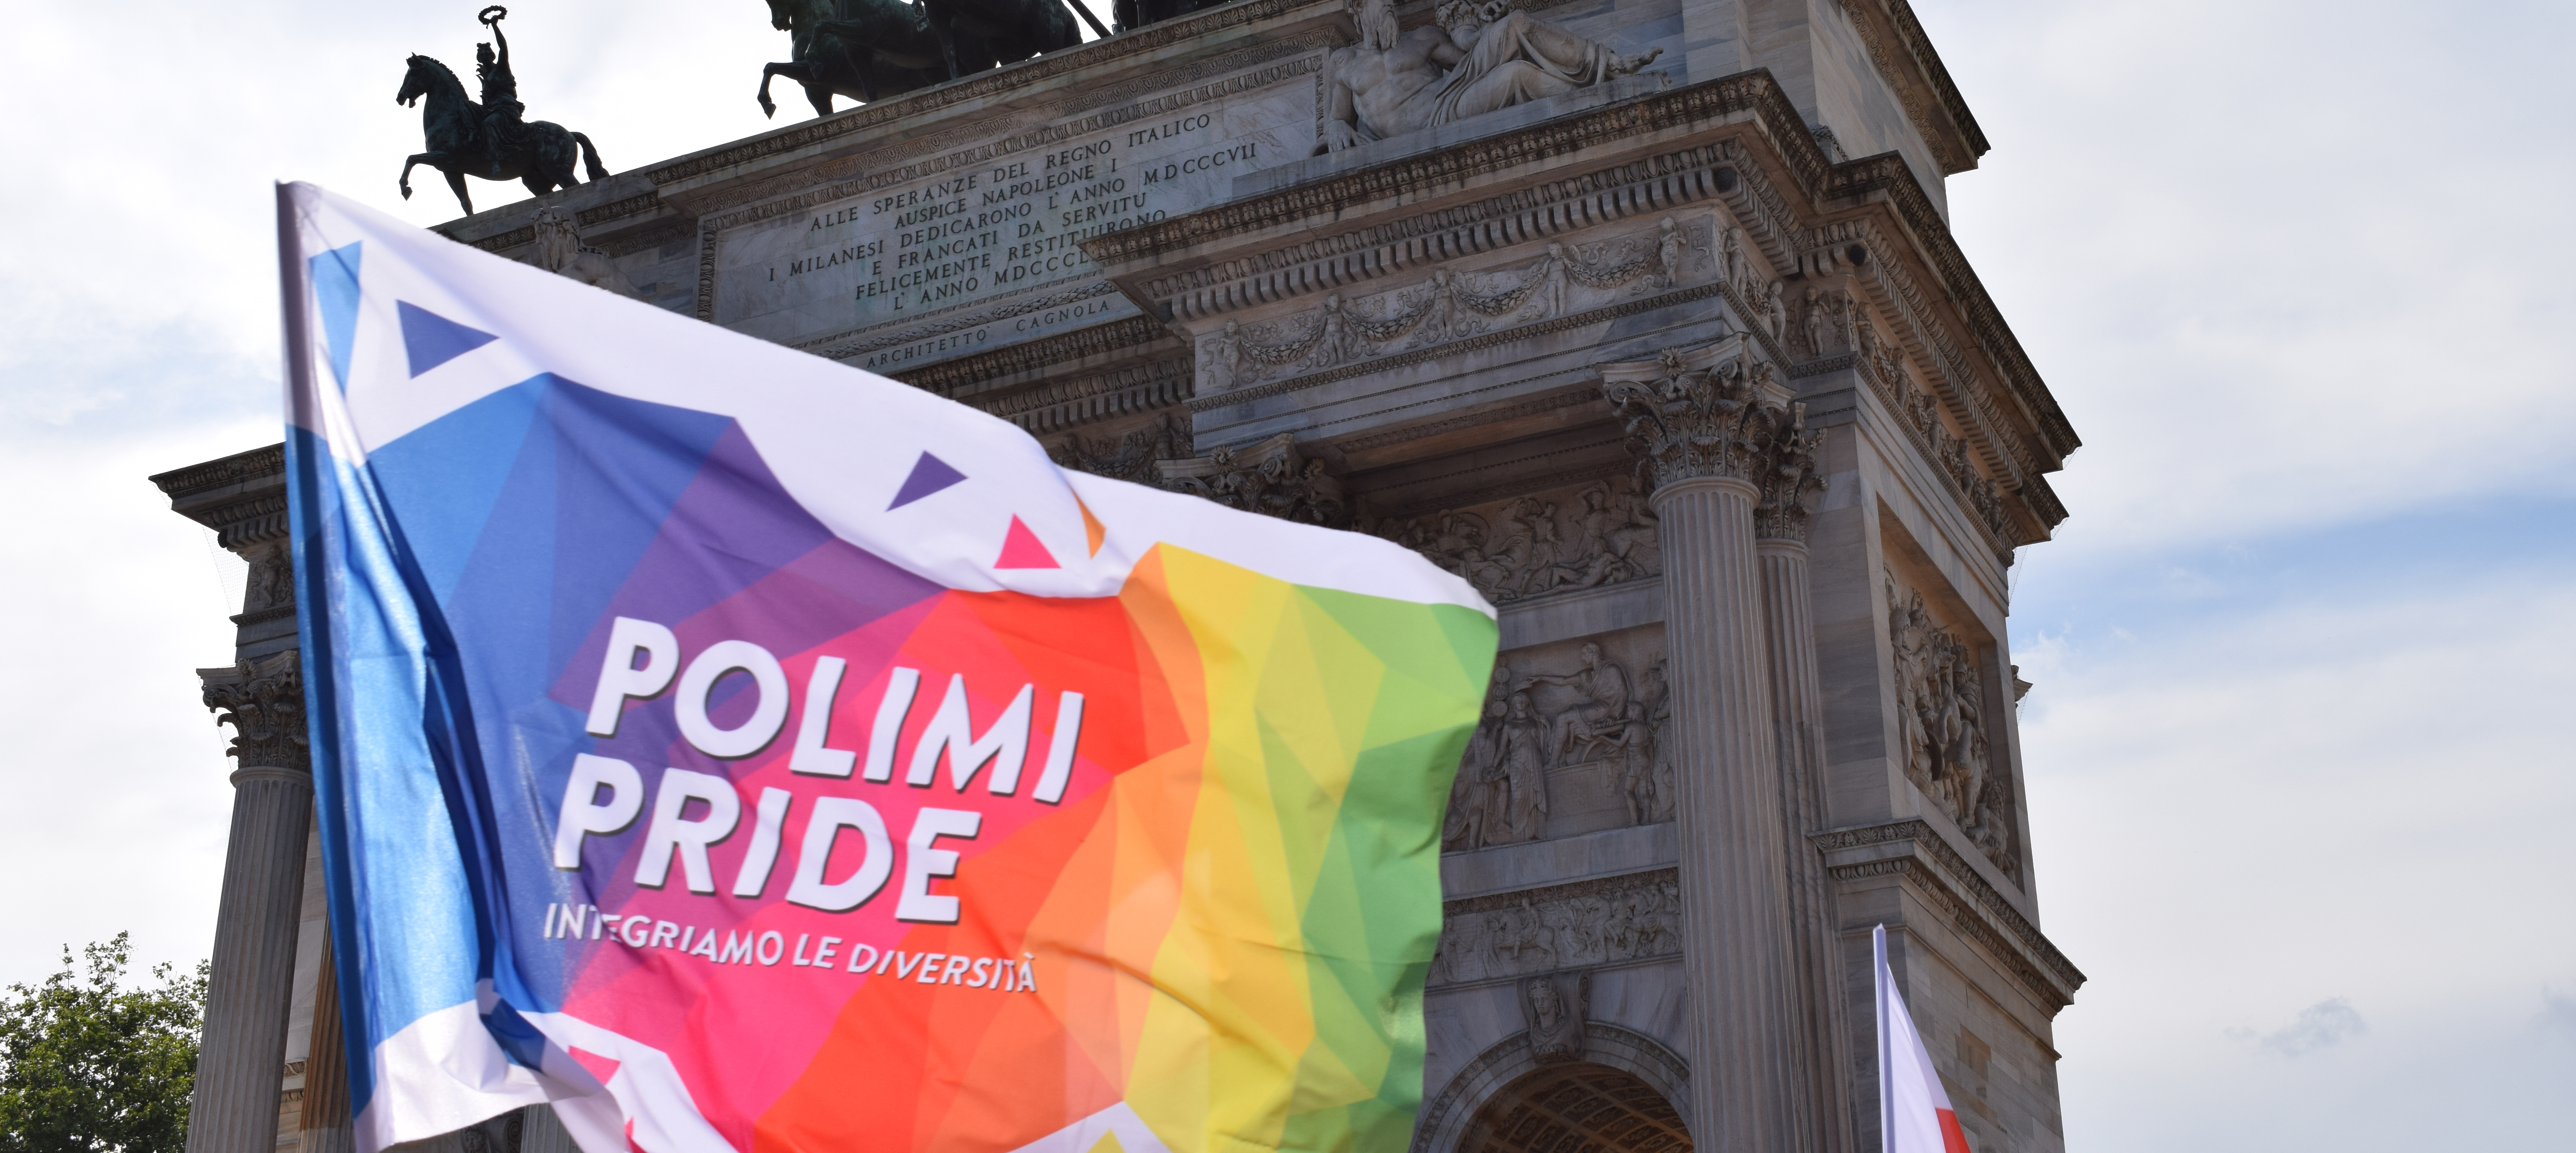 La bandiera del Polimi Pride all'Arco della Pace per il Milano Pride 2021